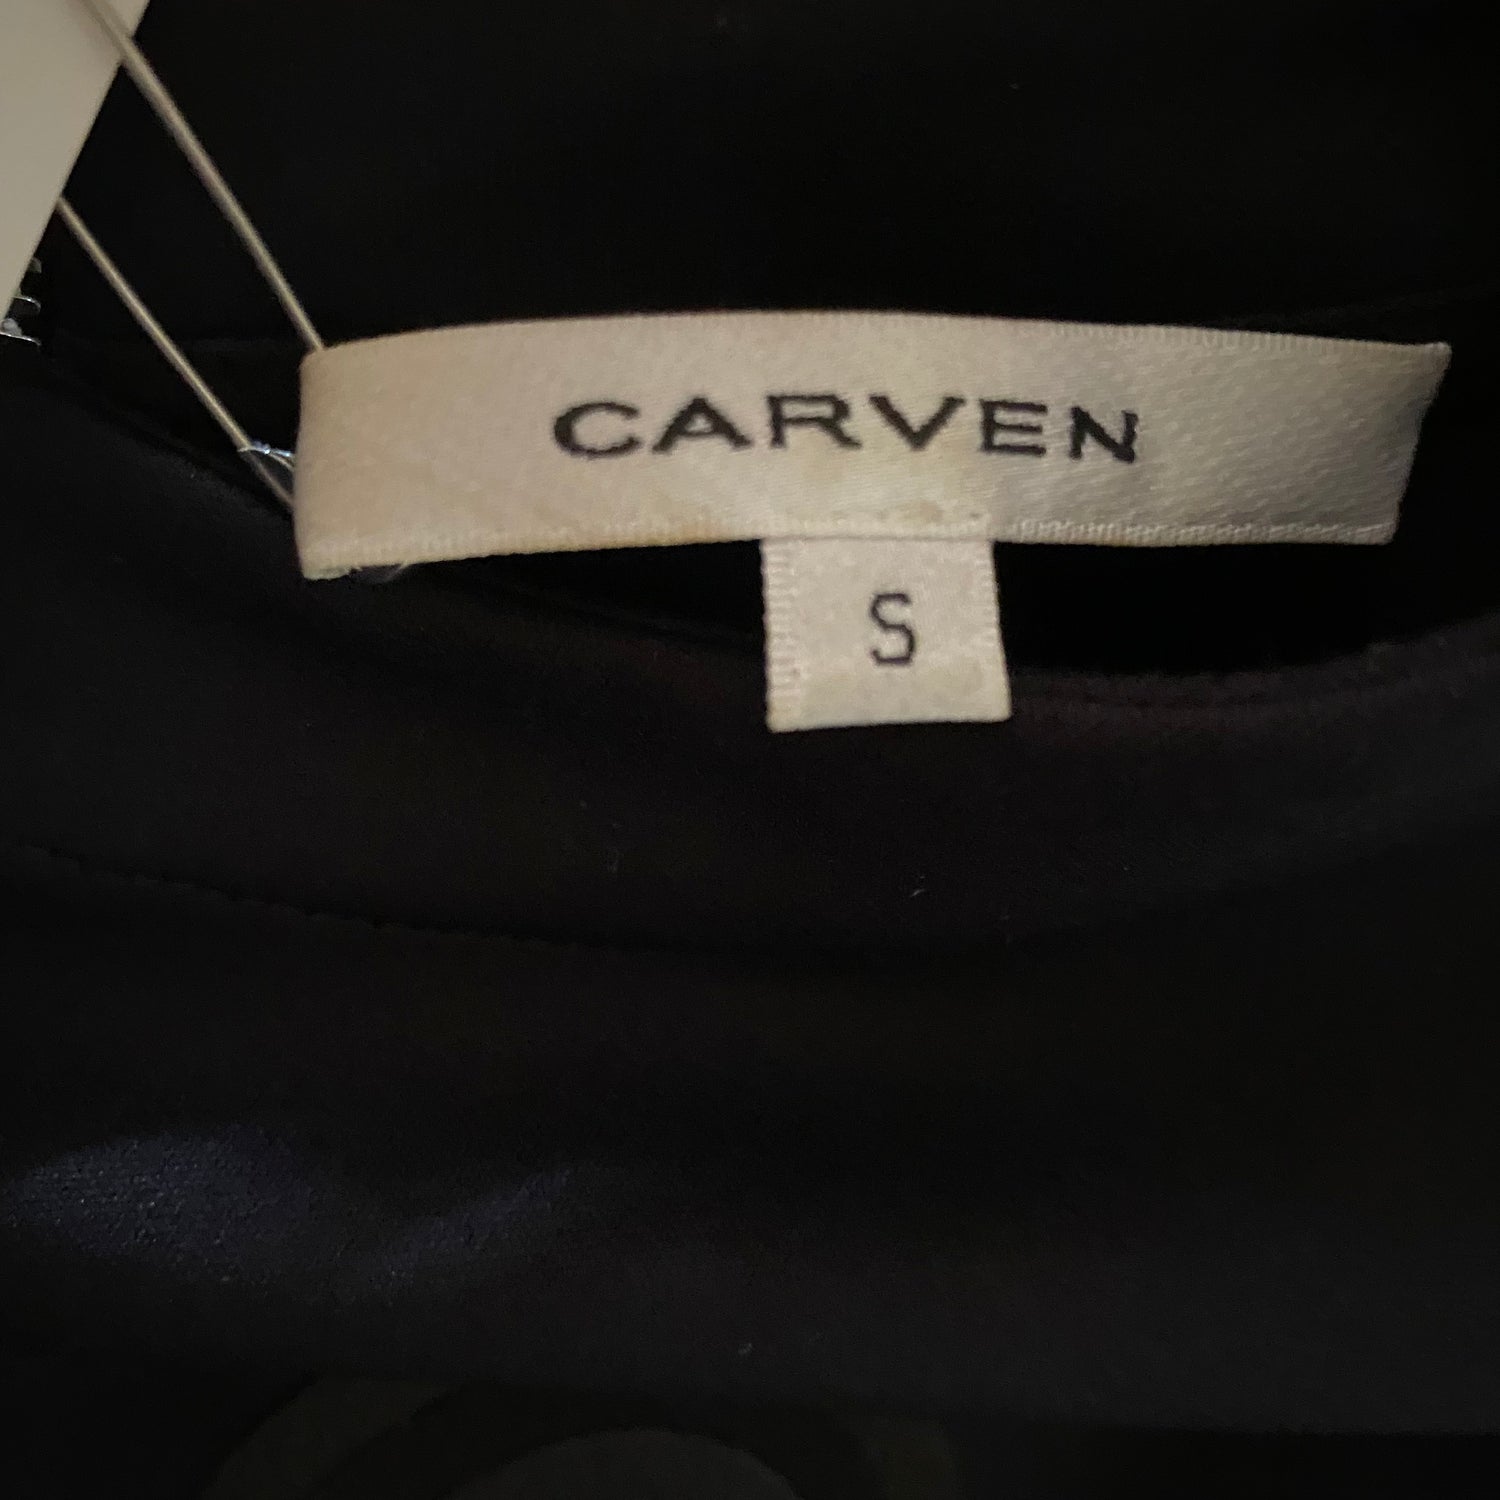 CARVEN Dresses vintage Lysis Paris pre-owned secondhand